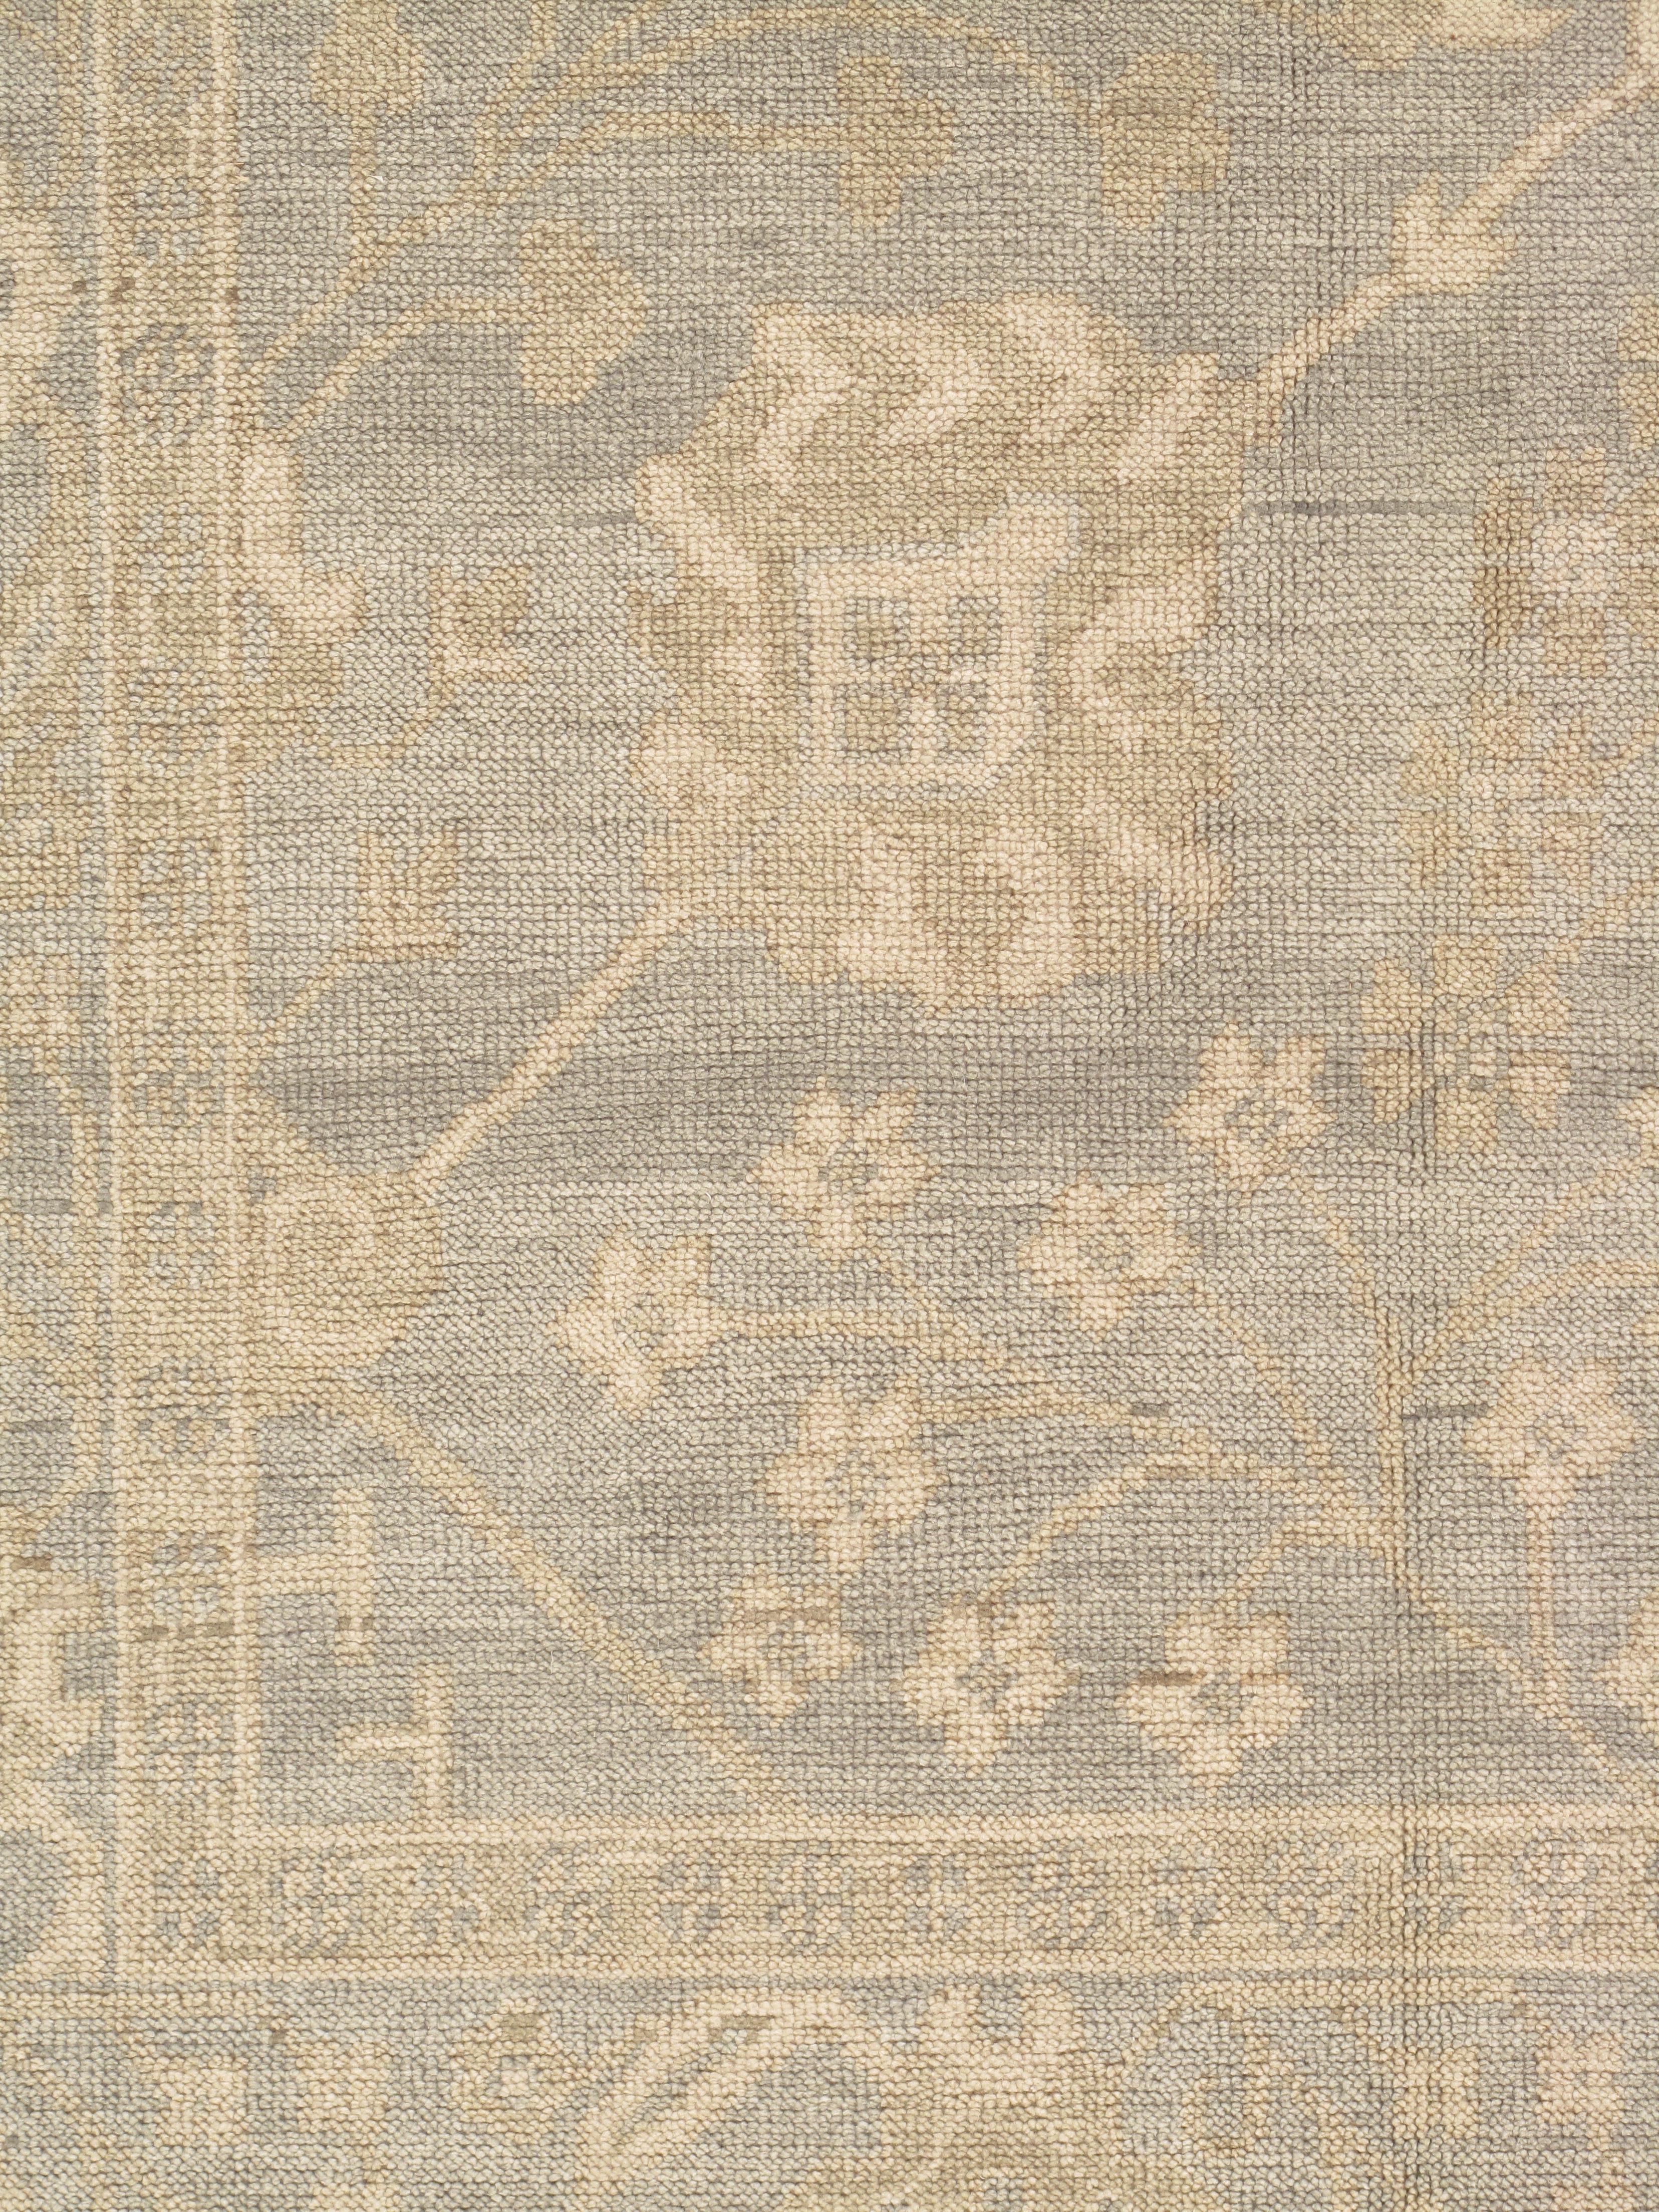 Wool Vintage Oushak Carpet, Oriental Rug, Handmade Green Grey, Ivory, Saffron For Sale